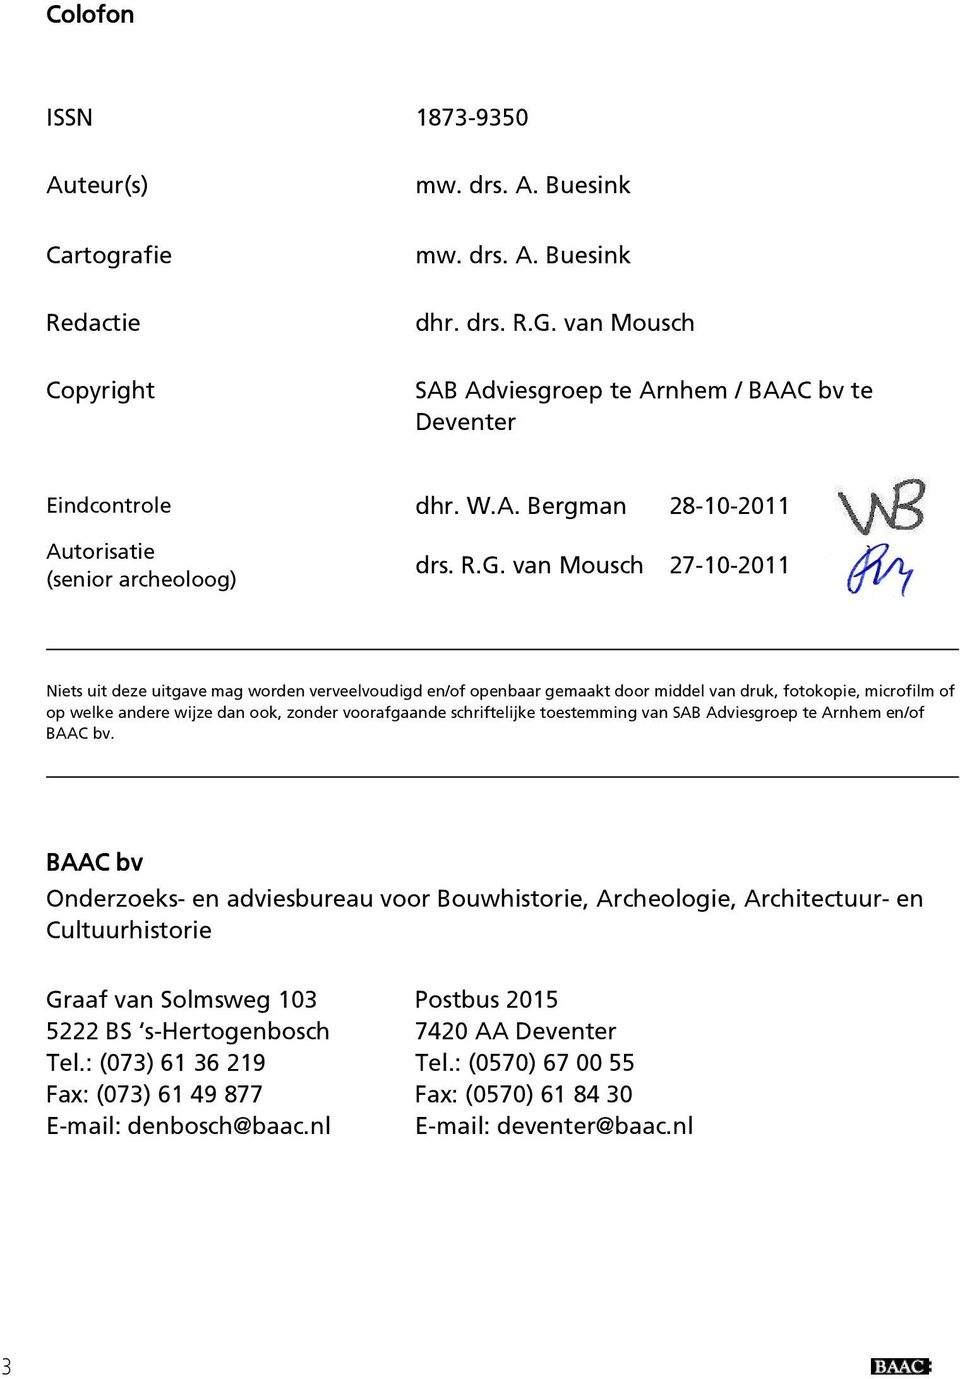 schriftelijke toestemming van SAB Adviesgroep te Arnhem en/of BAAC bv.